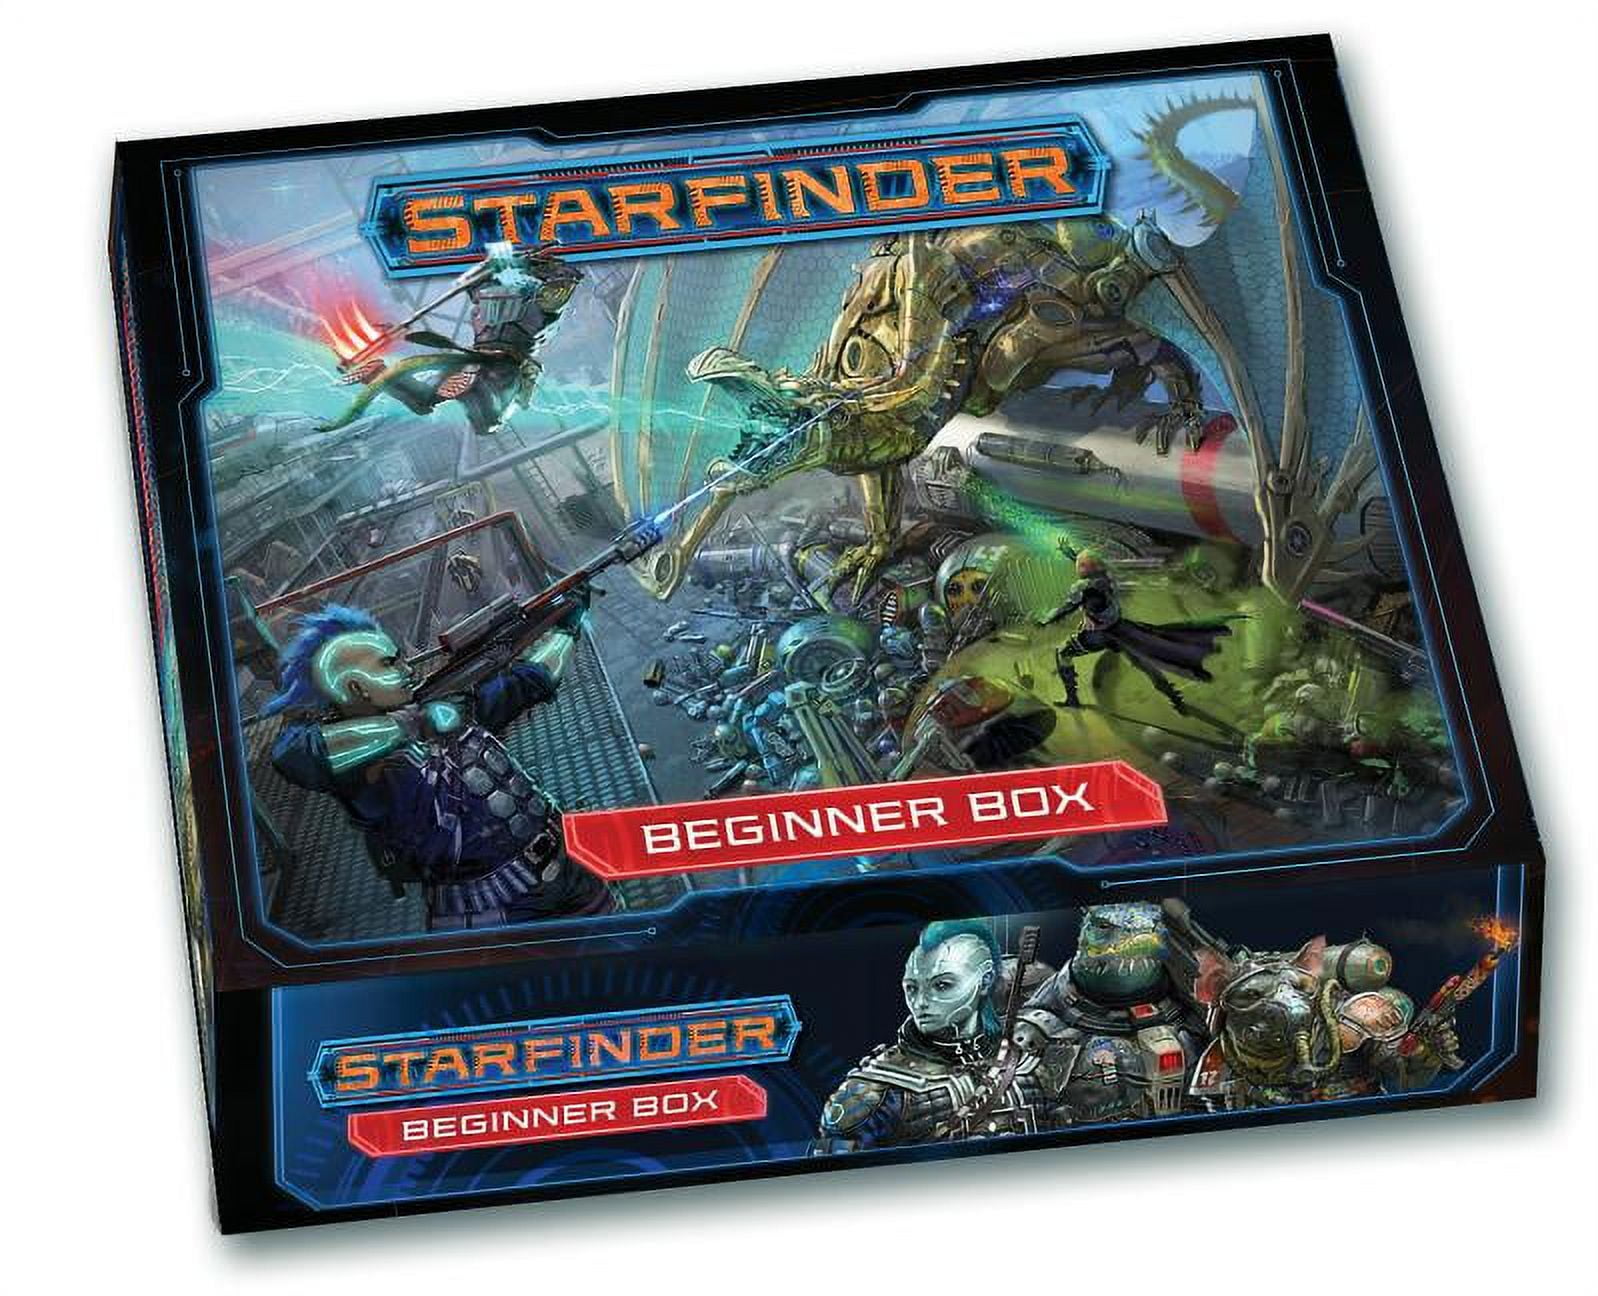 Pzo7110 Starfinder Beginner Box Game